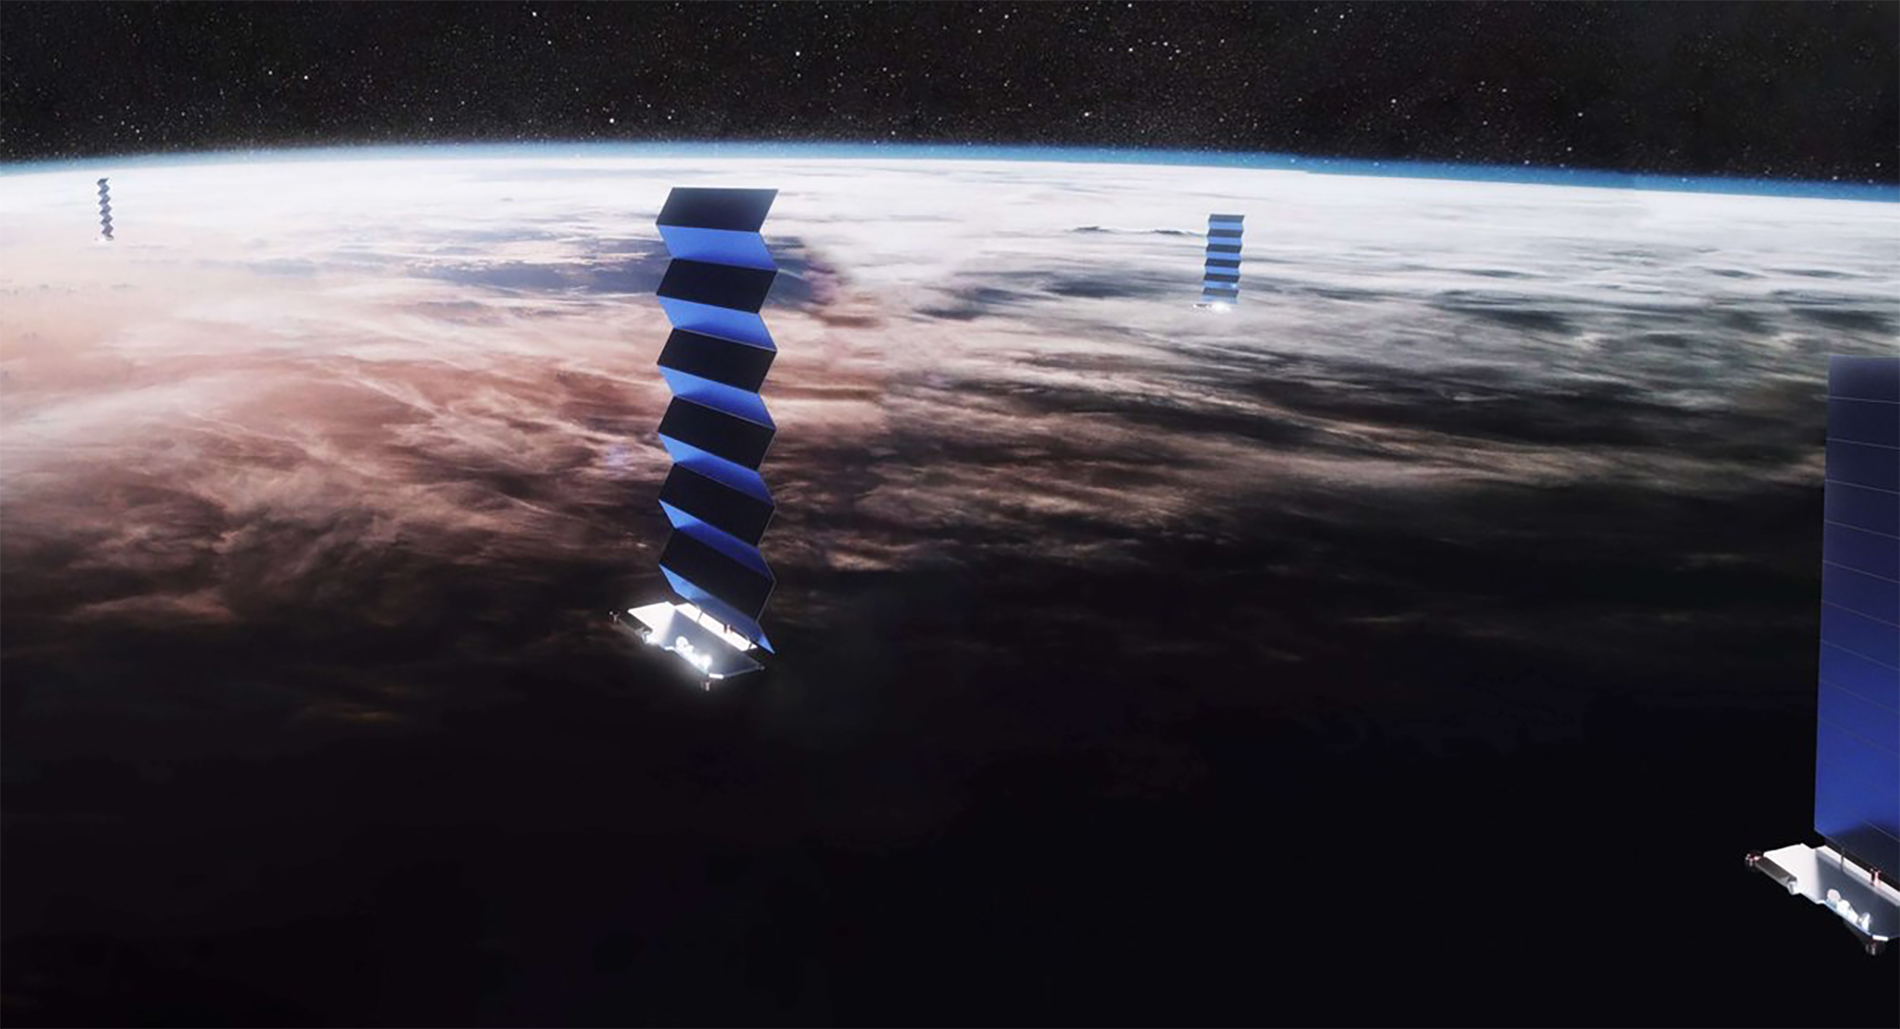 La constellation Starlink est considérée comme un outil de communication militaire. © SpaceX